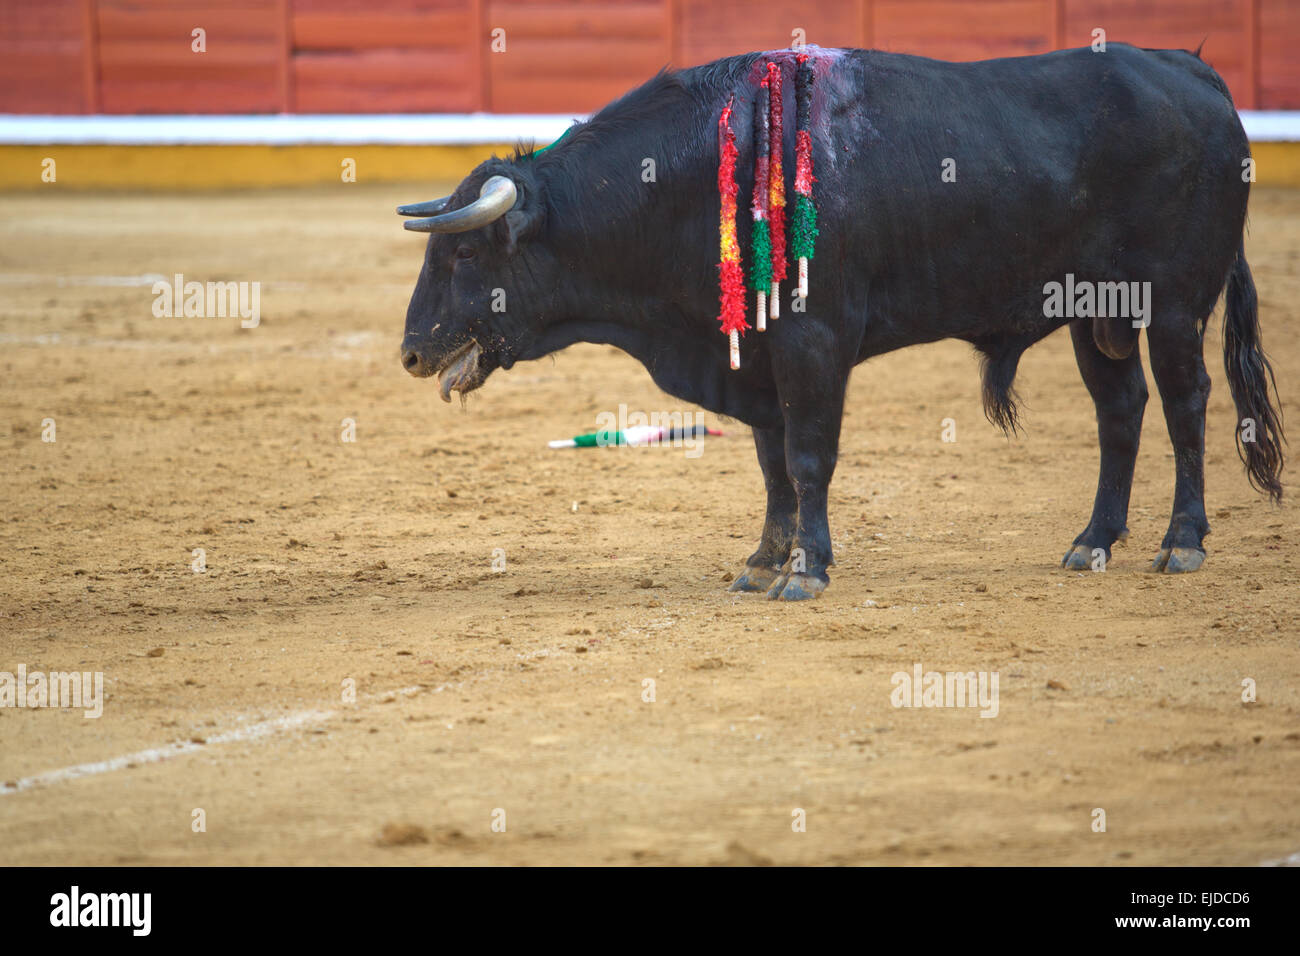 Un taureau dans une corrida espagnole typique, Badajoz, Espagne Banque D'Images